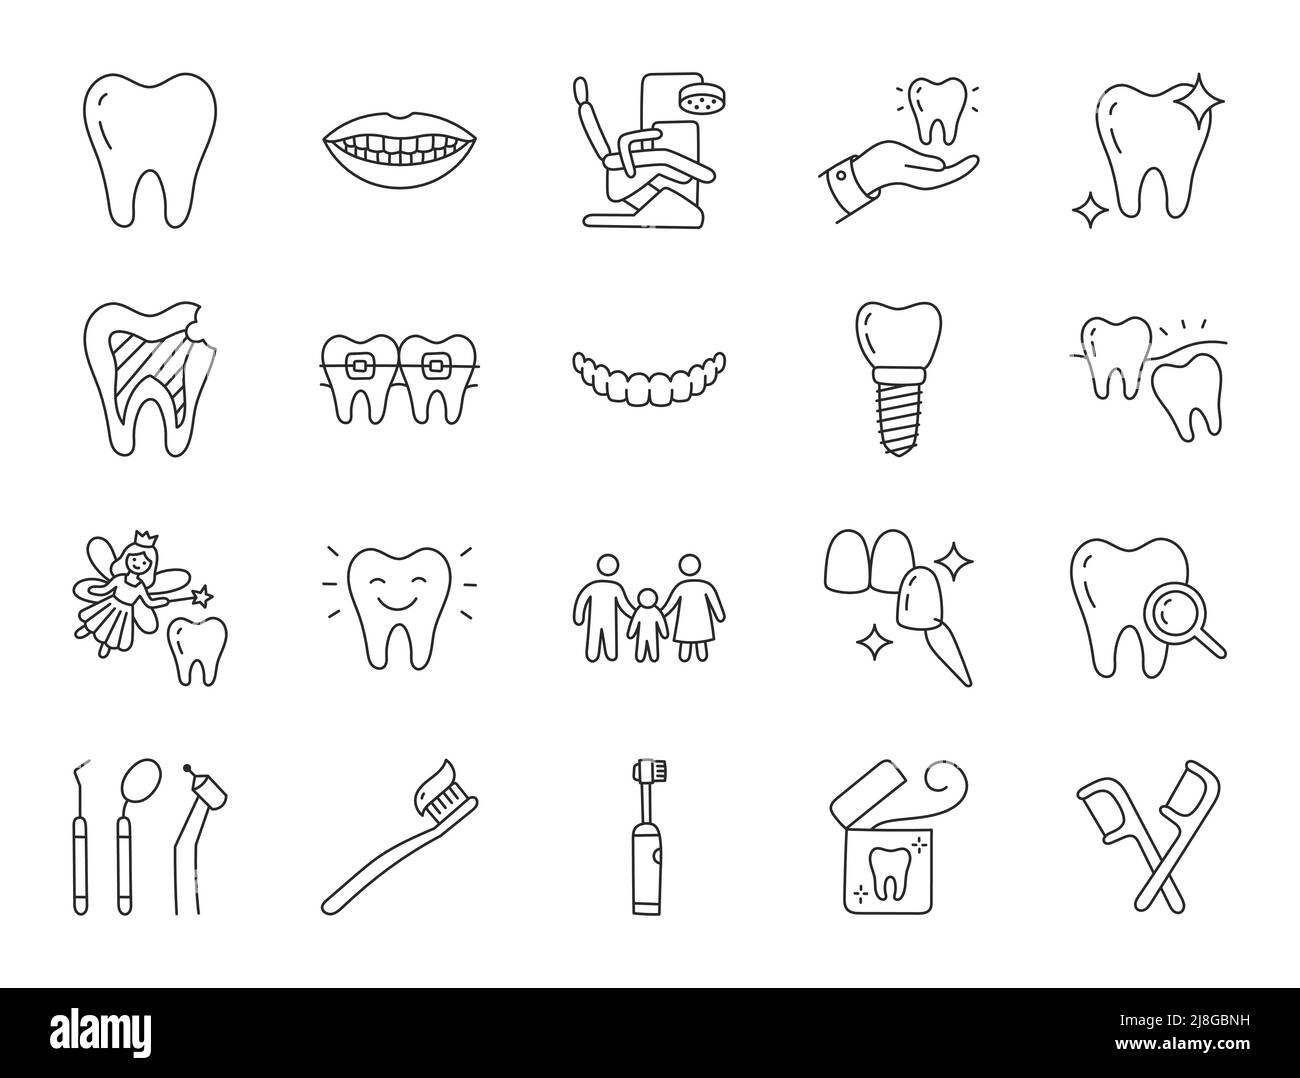 Illustrazione del doodle della clinica dentale compreso le icone - dente di saggezza, impiallacciatura, sbiancamento dei denti, bretelle, impianto, spazzolino elettrico, carie, filo interdentale, bocca Illustrazione Vettoriale